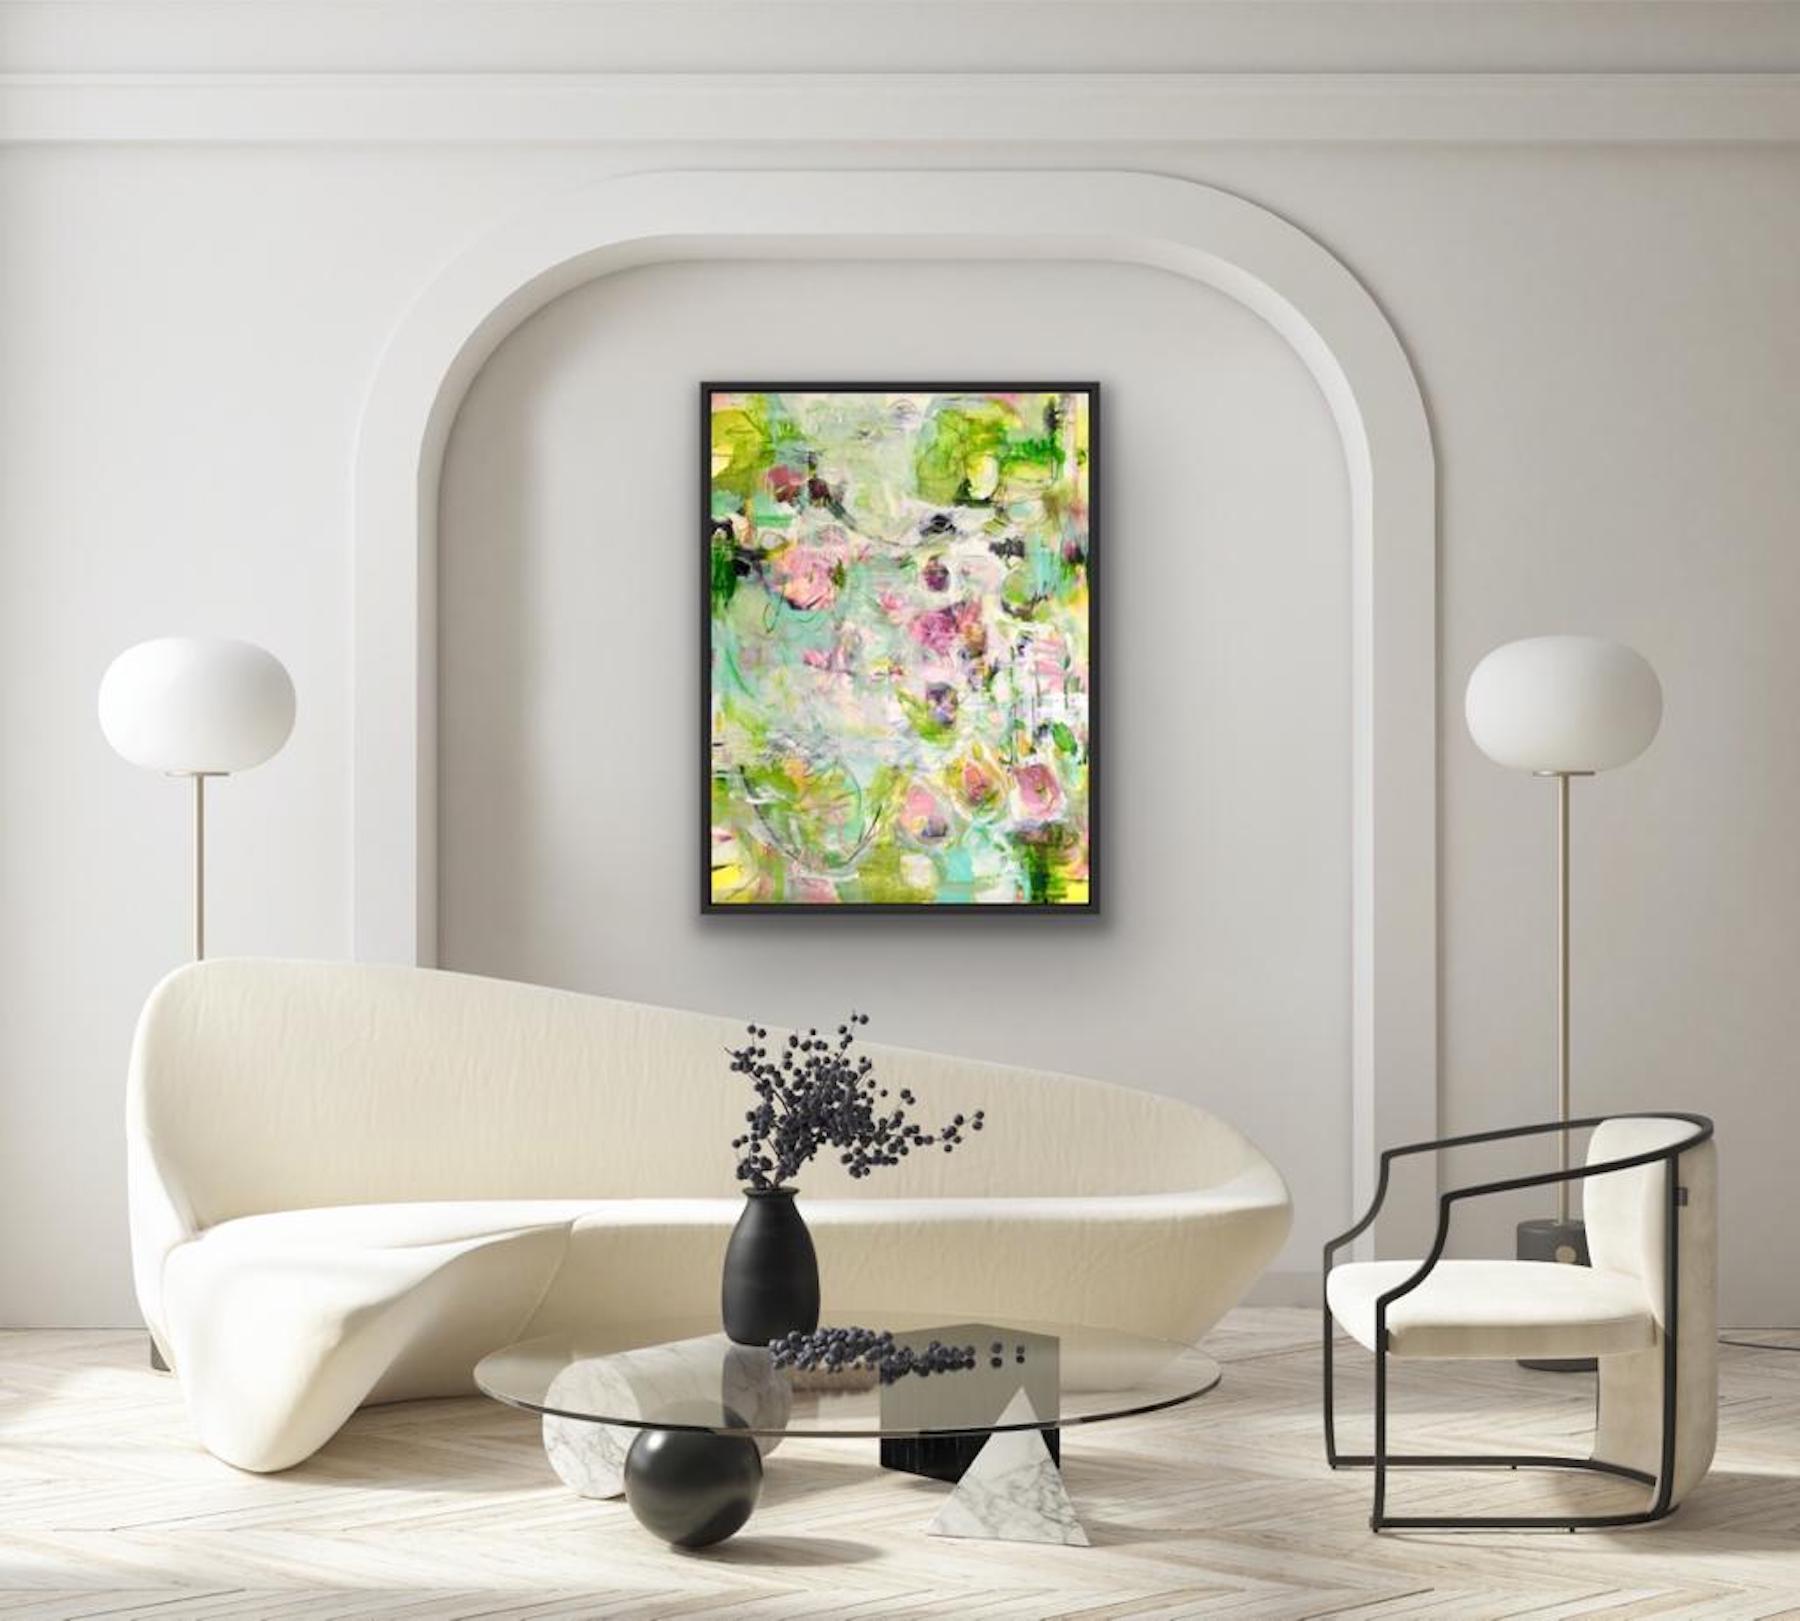 Printemps, art floral abstrait, art du printemps, art frais, peinture contemporaine lumineuse - Painting de Janet Keith